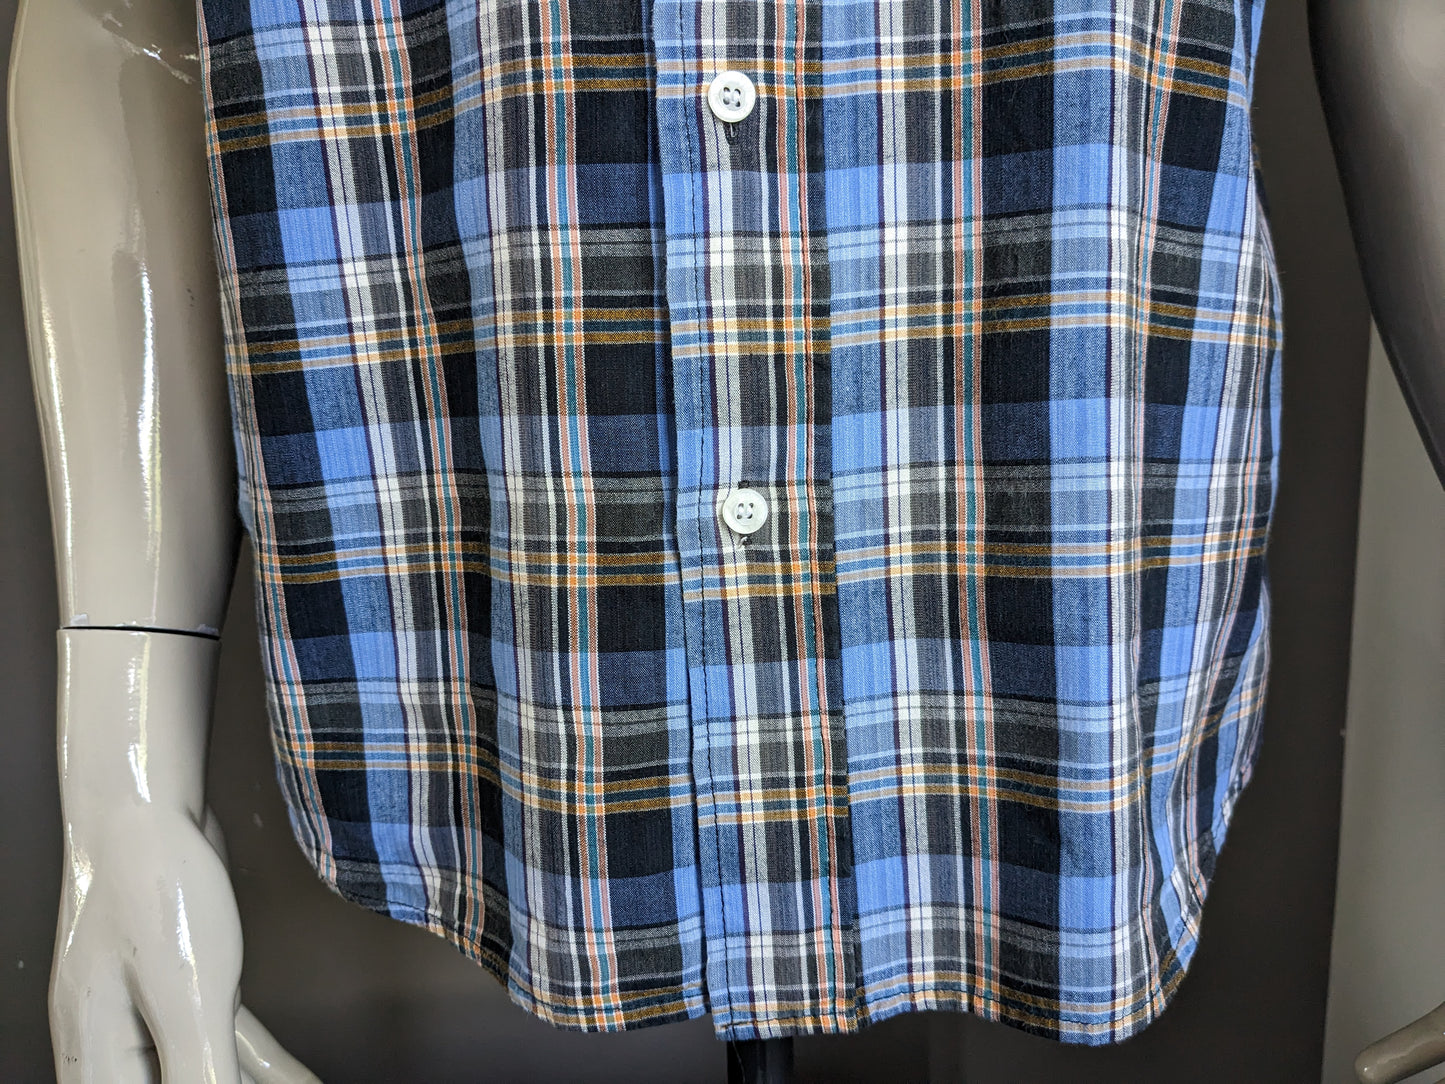 Manche courte de chemise kenmore vintage. Blue Orange vérifié. Taille M / L.